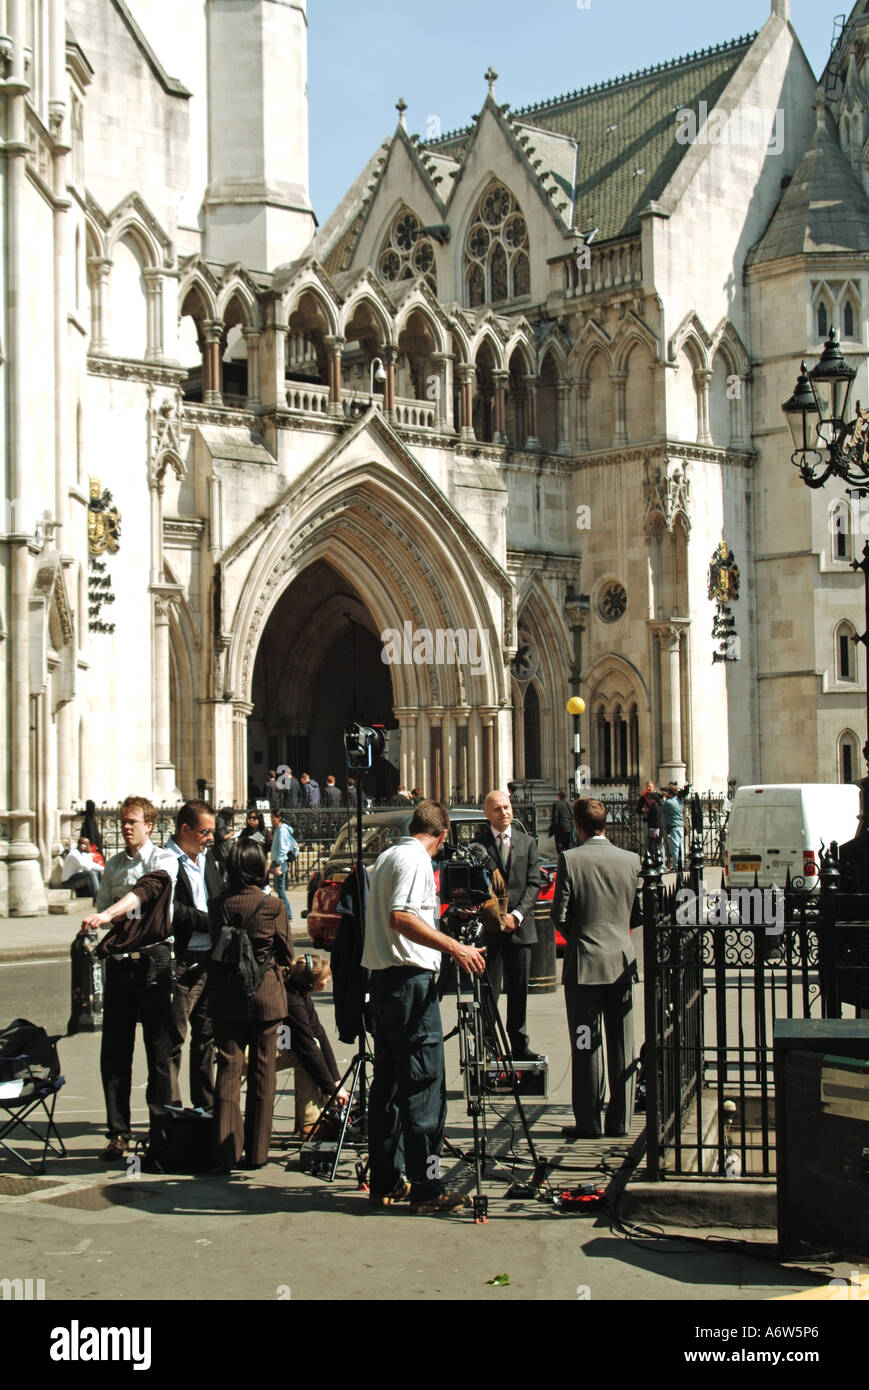 Giornalisti e giornalisti di notizie con l'equipaggio di telecamere al lavoro intervistando & segnalando al di fuori della Corte reale di giustizia Strand Londra Inghilterra UK Foto Stock